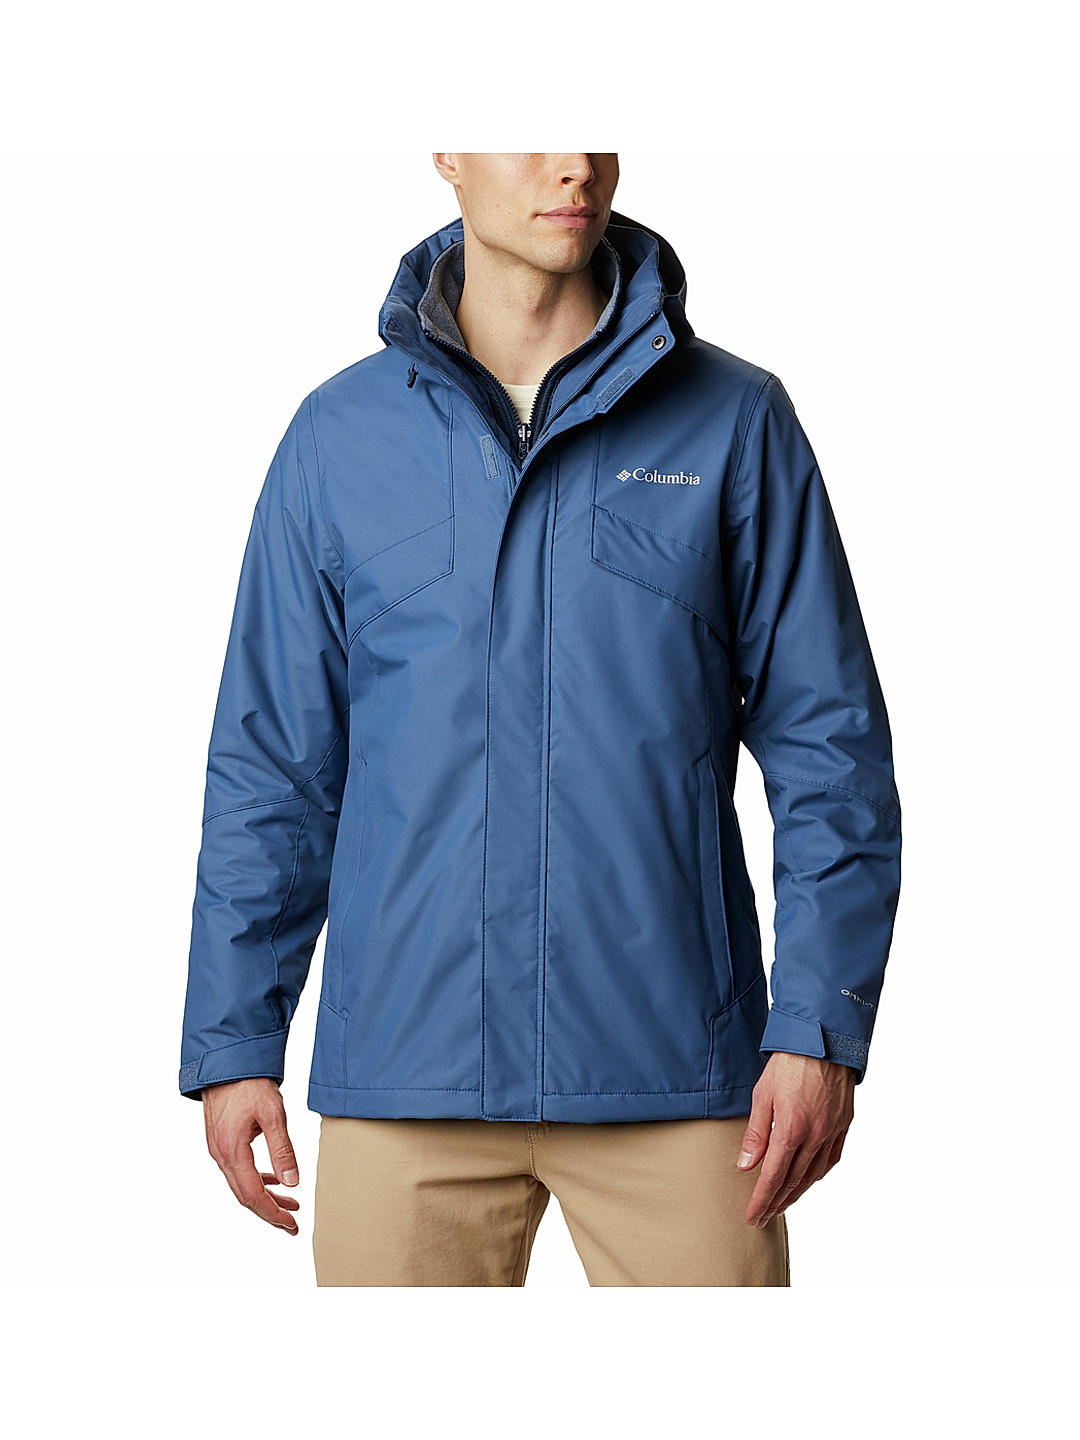 Buy Blue Bugaboo Ii Fleece Interchange Jacket for Men Online at Columbia  Sportswear